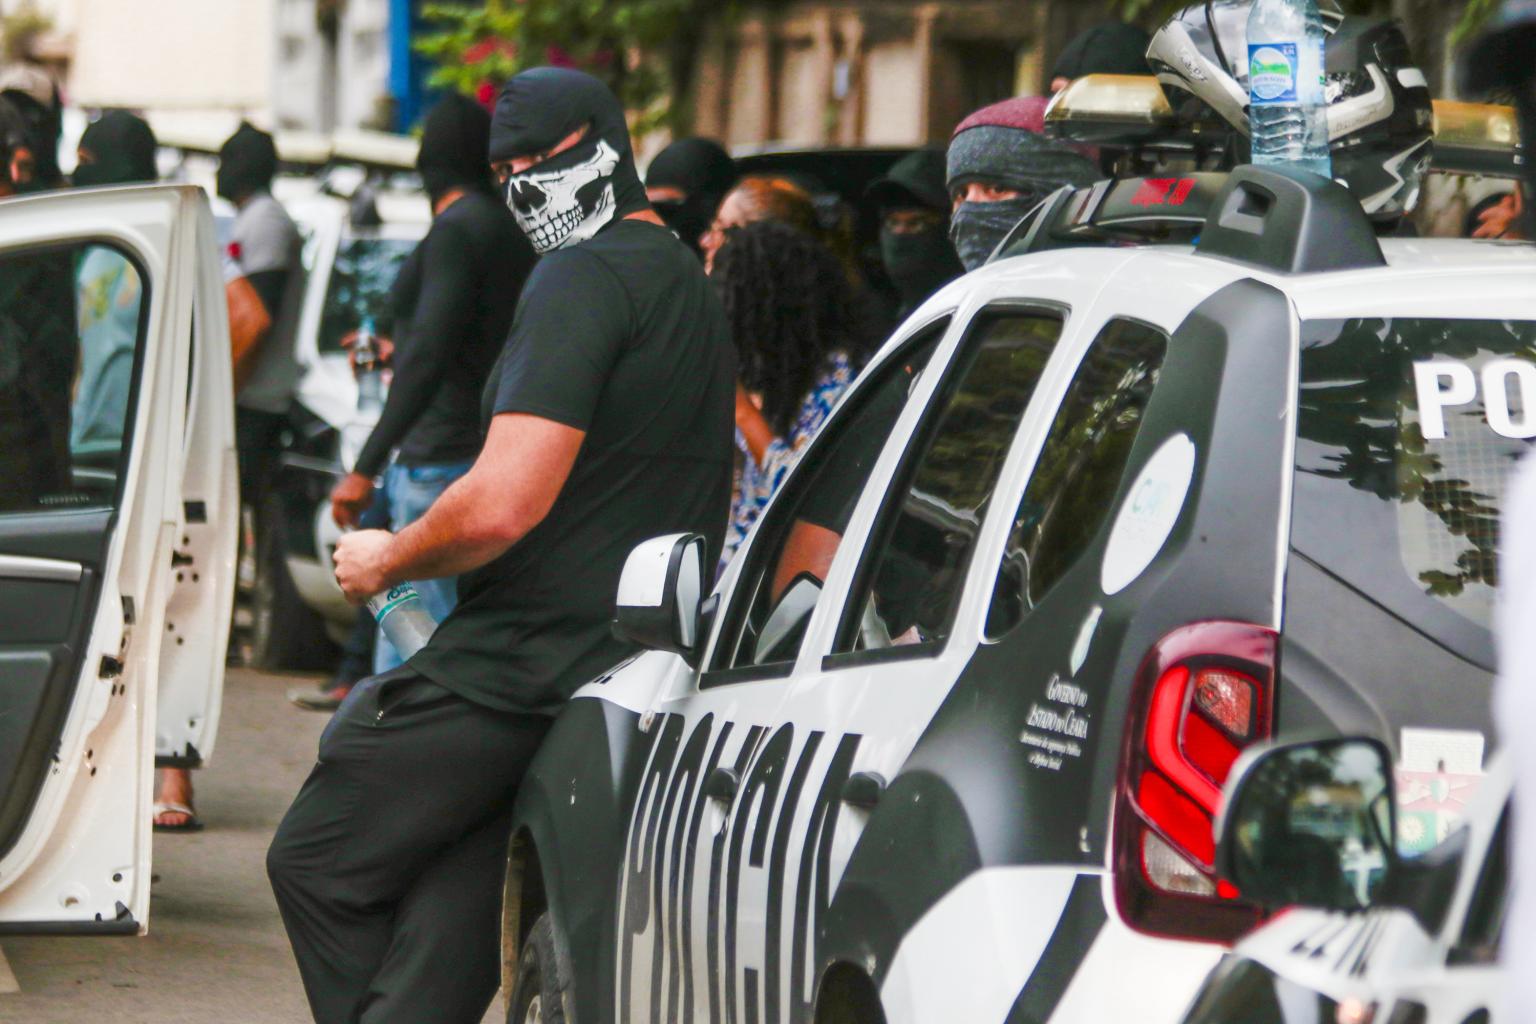 Policiais militares encapuzados e sem farda se reúnem em protesto na cidade de Fortaleza